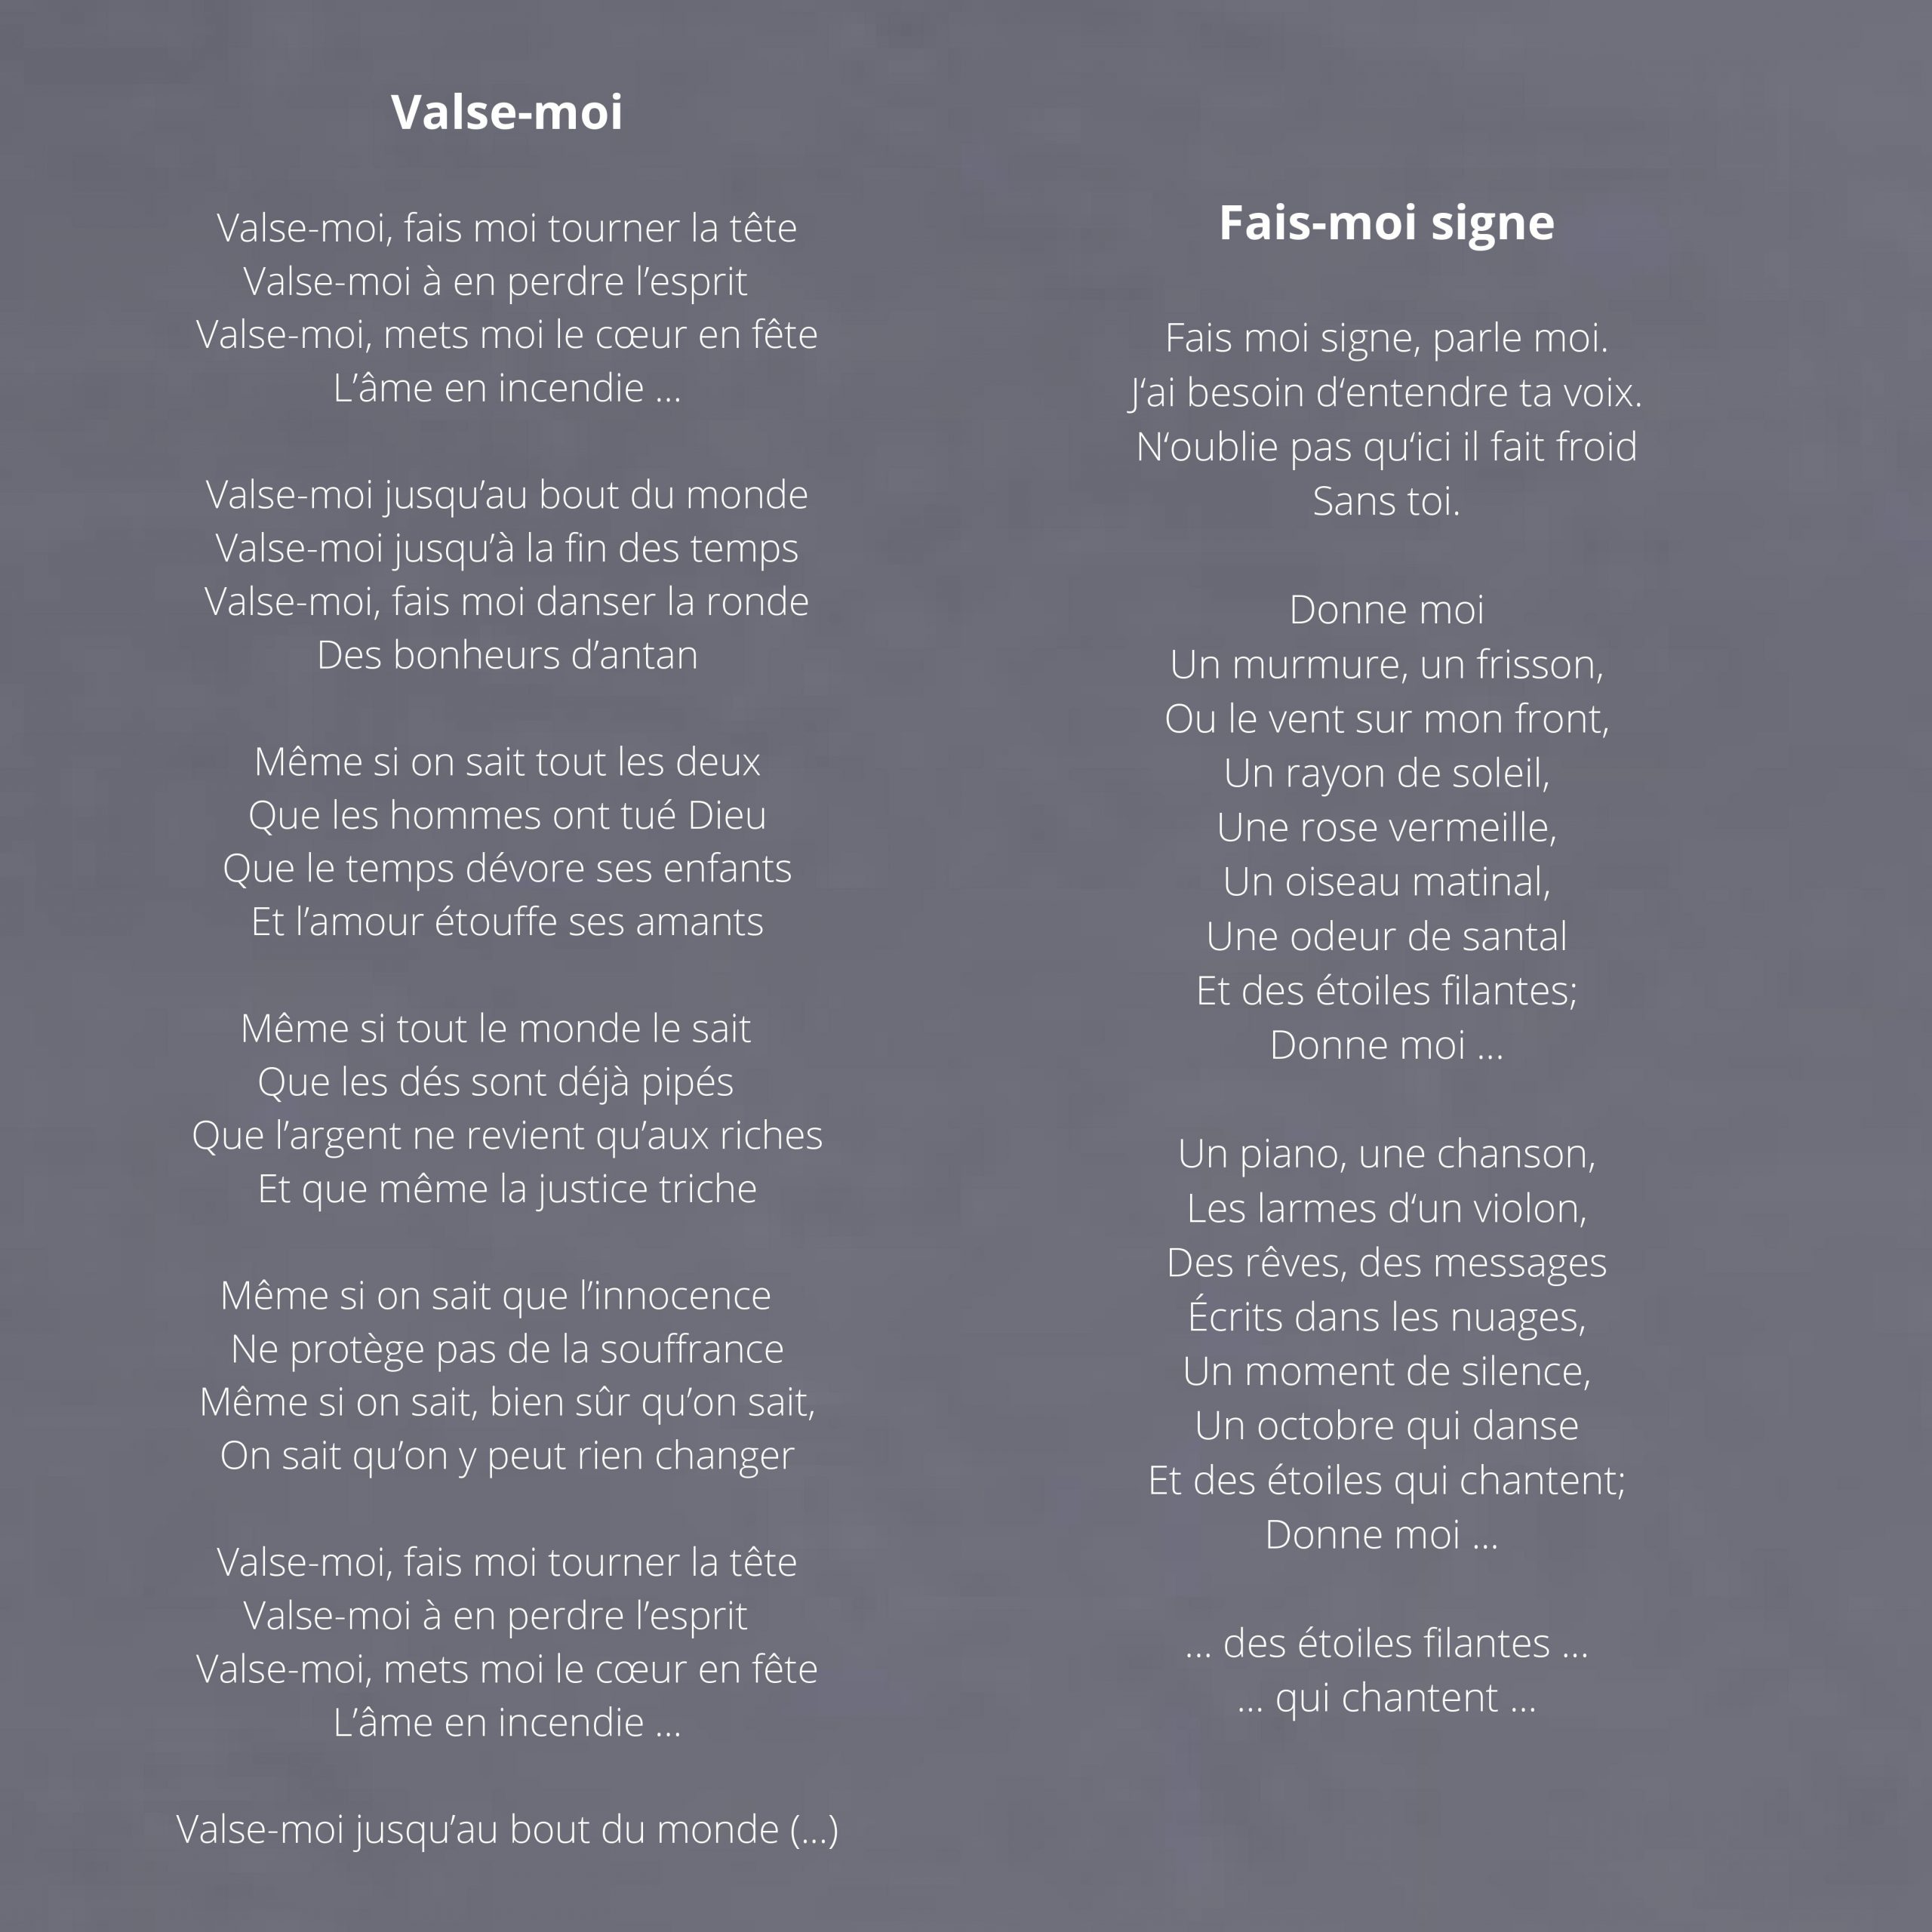 Songtext Valse-moi und Fais-moi signe Album Opus1